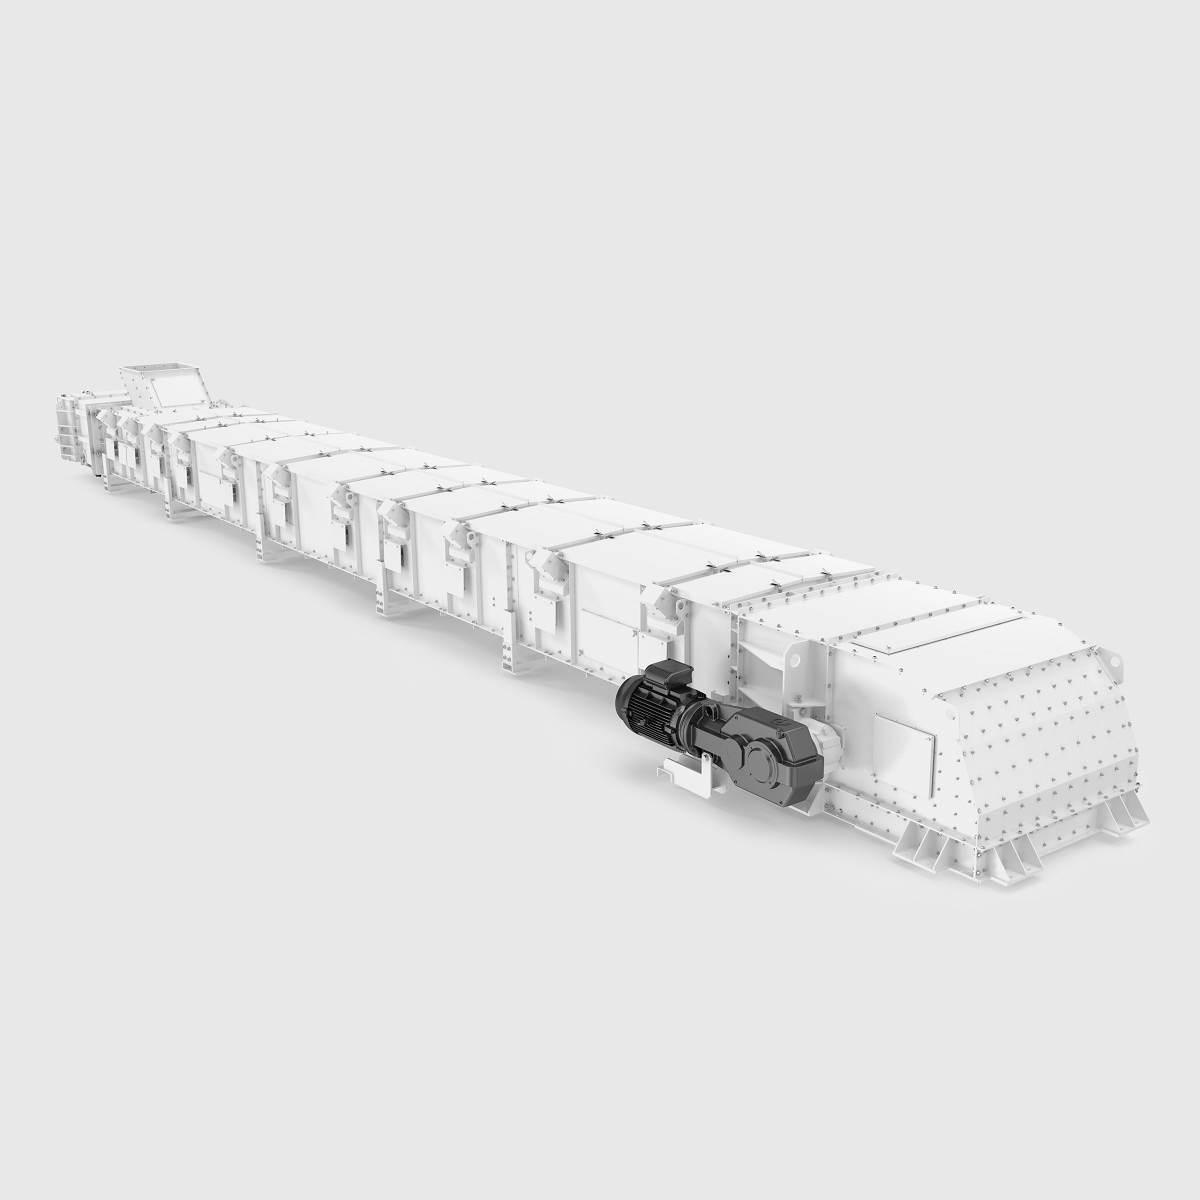 Zeo-bce enclosed belt conveyor